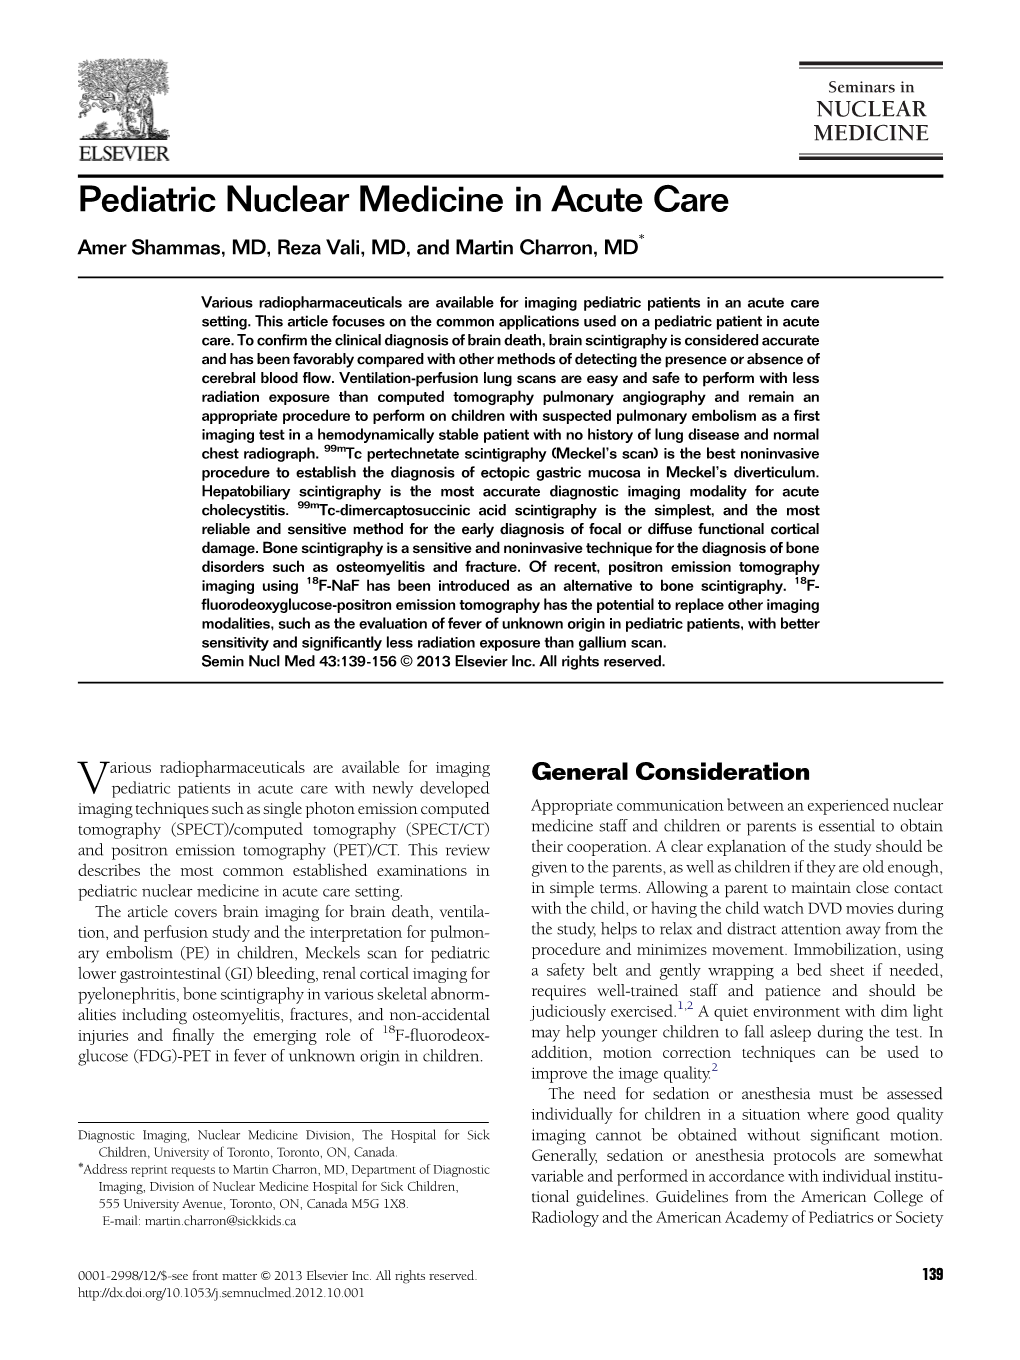 Pediatric Nuclear Medicine in Acute Care Amer Shammas, MD, Reza Vali, MD, and Martin Charron, MD*